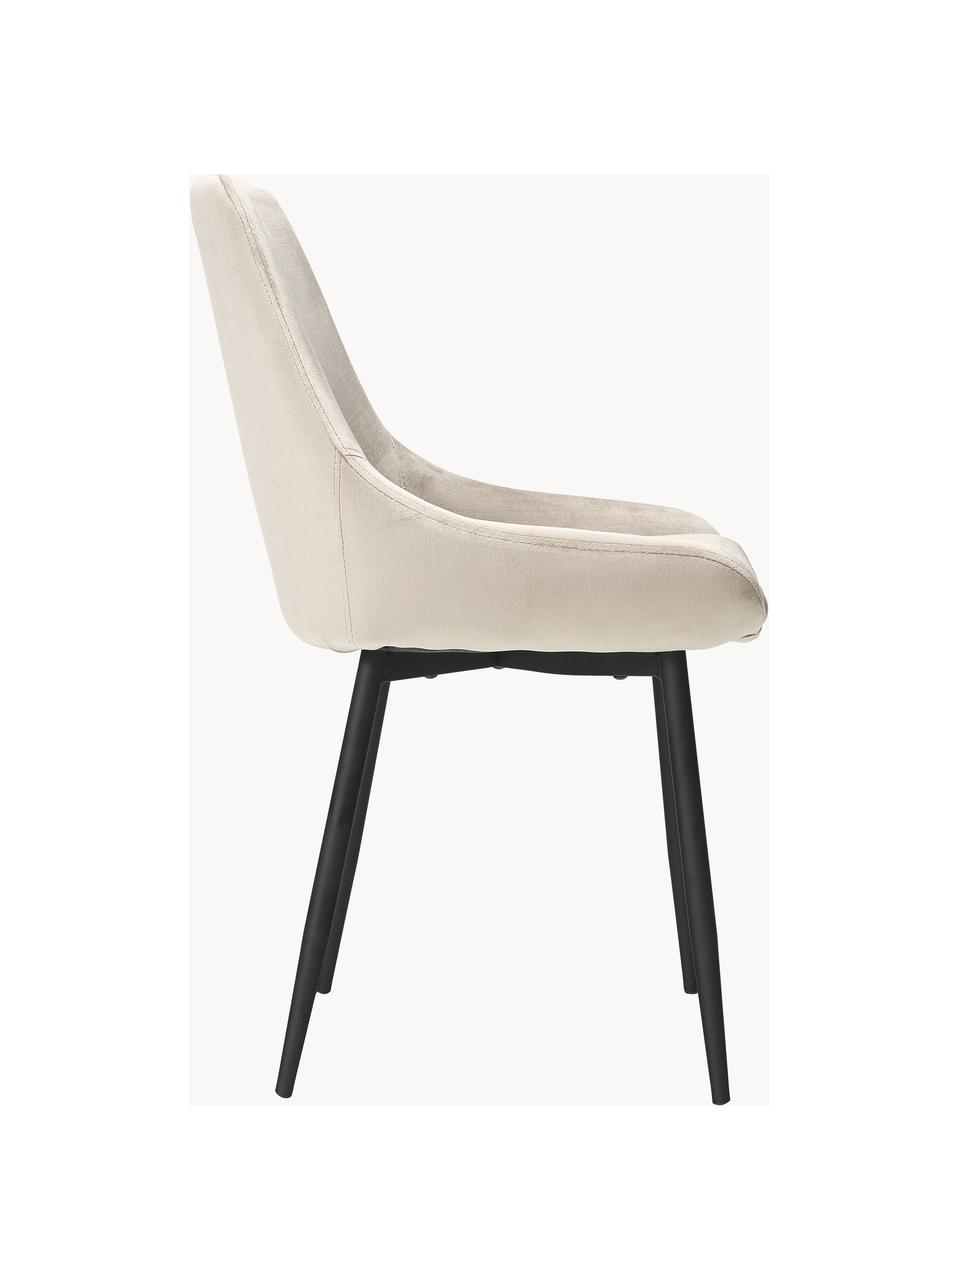 Krzesło tapicerowane z aksamitu Sierra, 2 szt., Tapicerka: aksamit (100% poliester) , Nogi: metal lakierowany, Beżowy aksamit, S 49 x G 55 cm